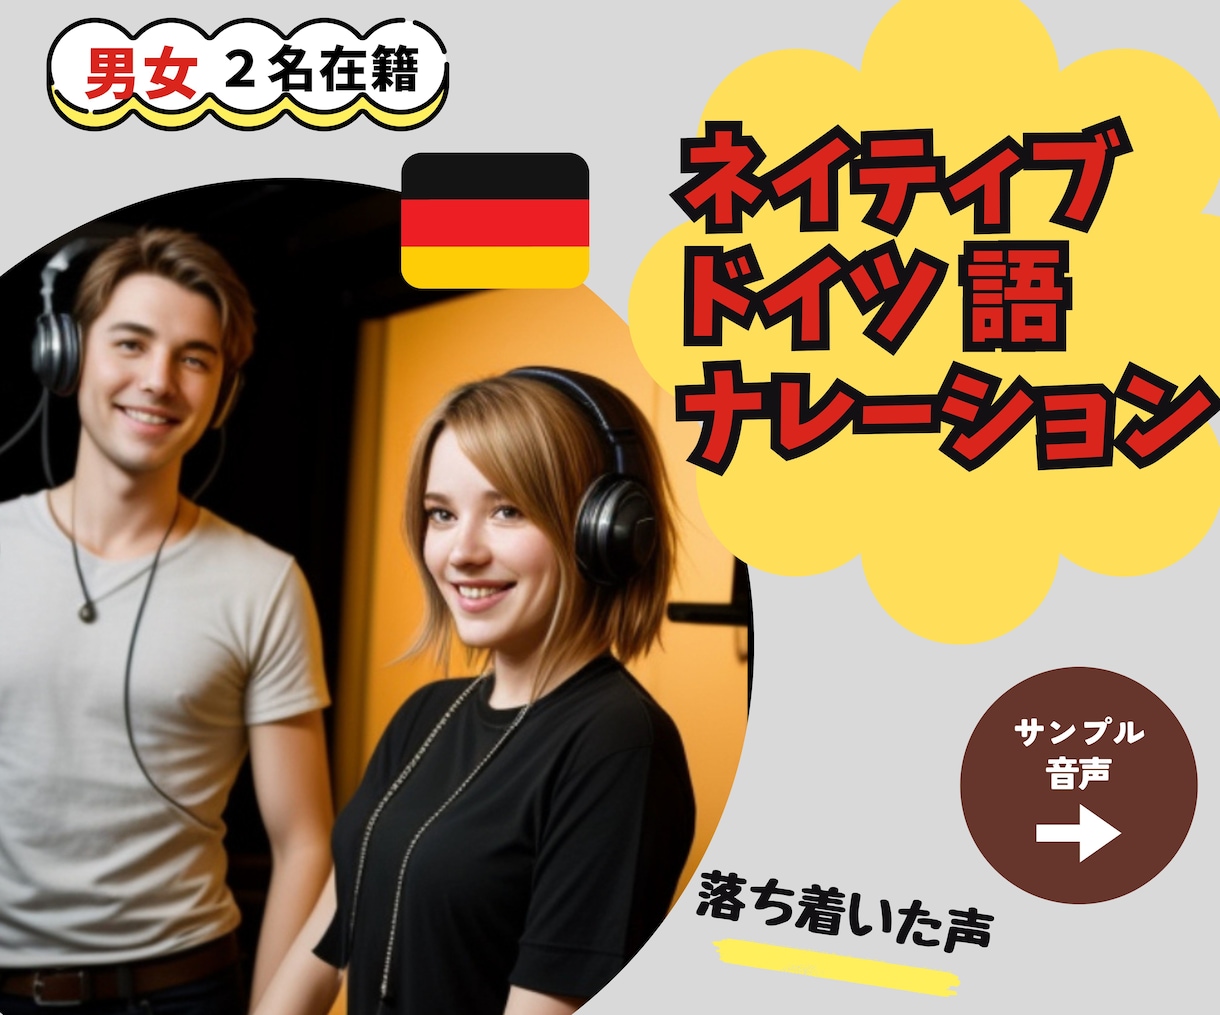 ドイツ出身の男女声優がドイツ語ナレーションをします 男女2人の声優が対応、プロフェッショナルドイツ語ナレーション イメージ1